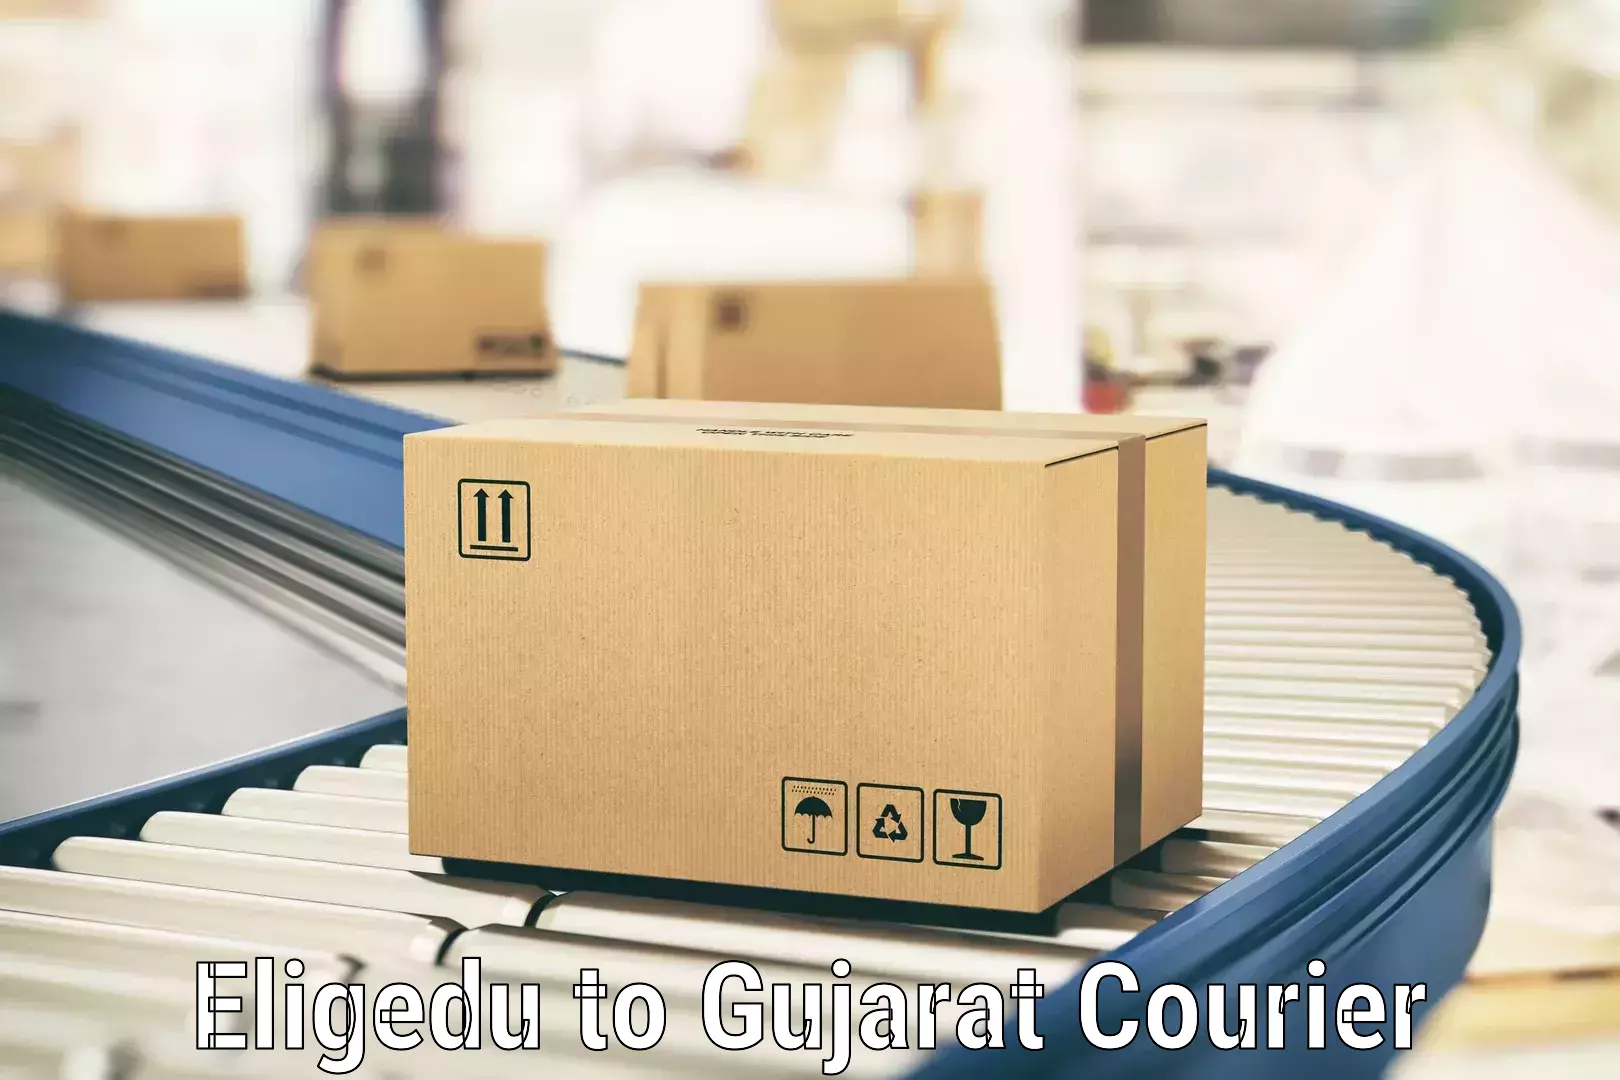 Efficient cargo services Eligedu to Gujarat